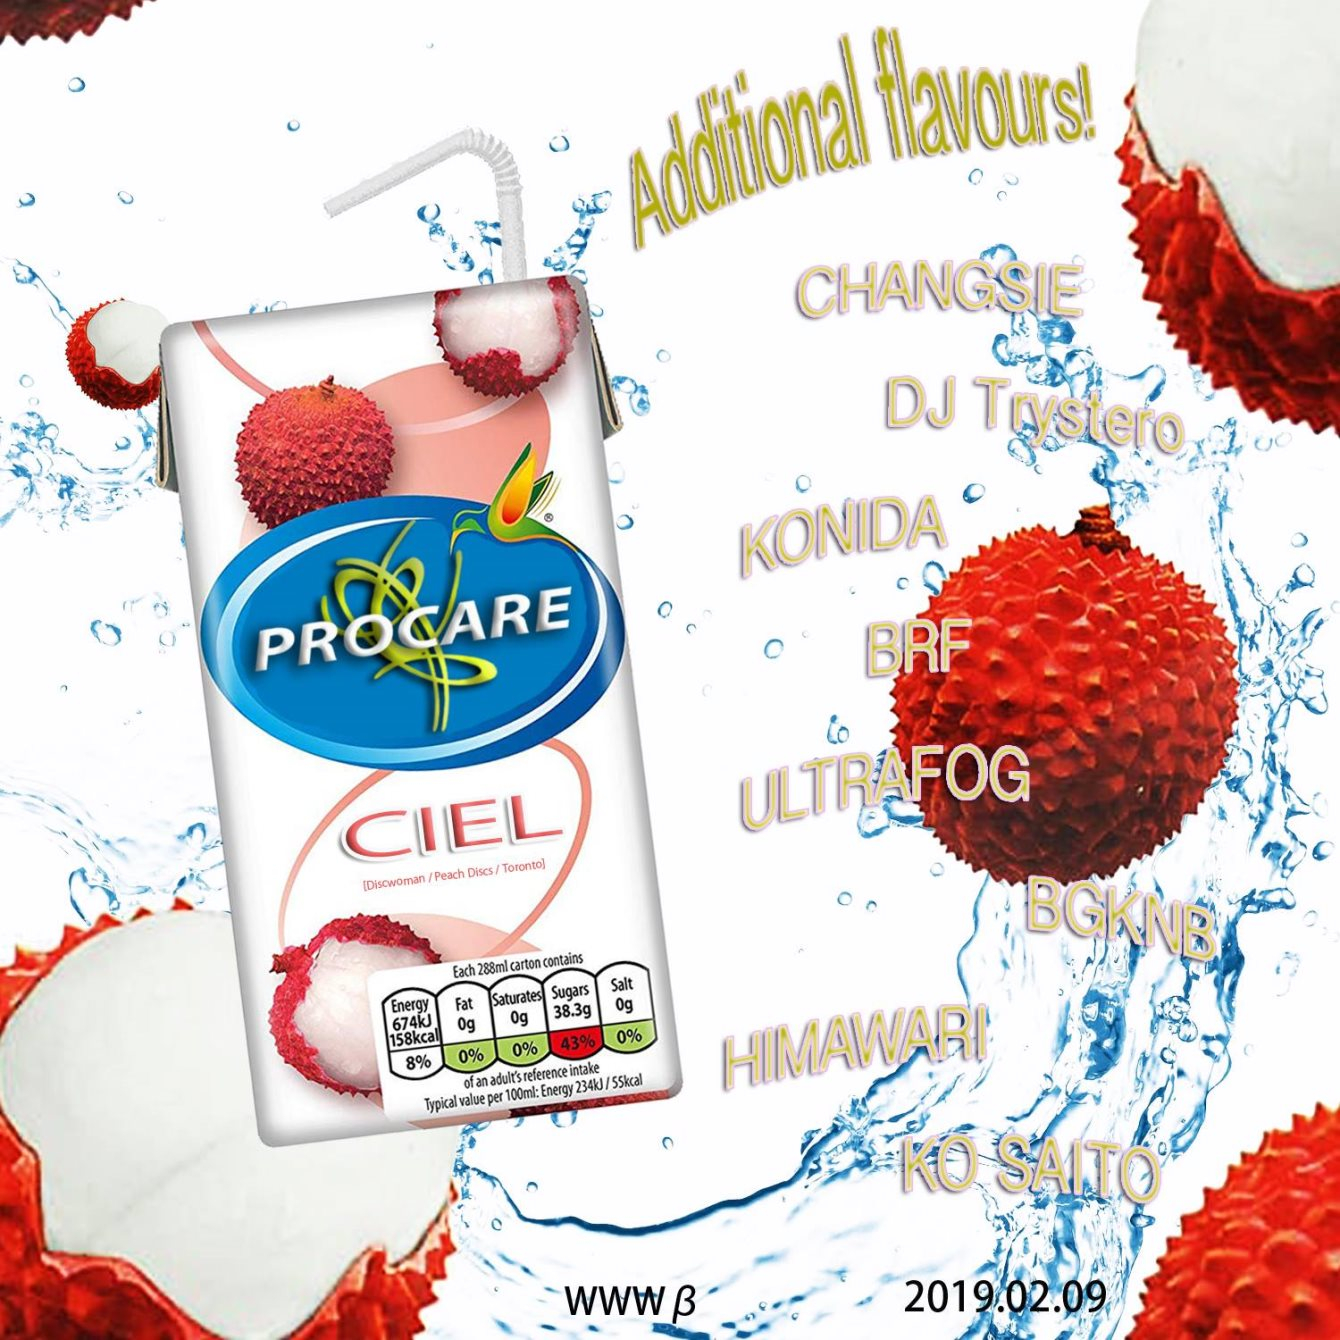 Procare feat. Ciel & Changsie - Flyer front